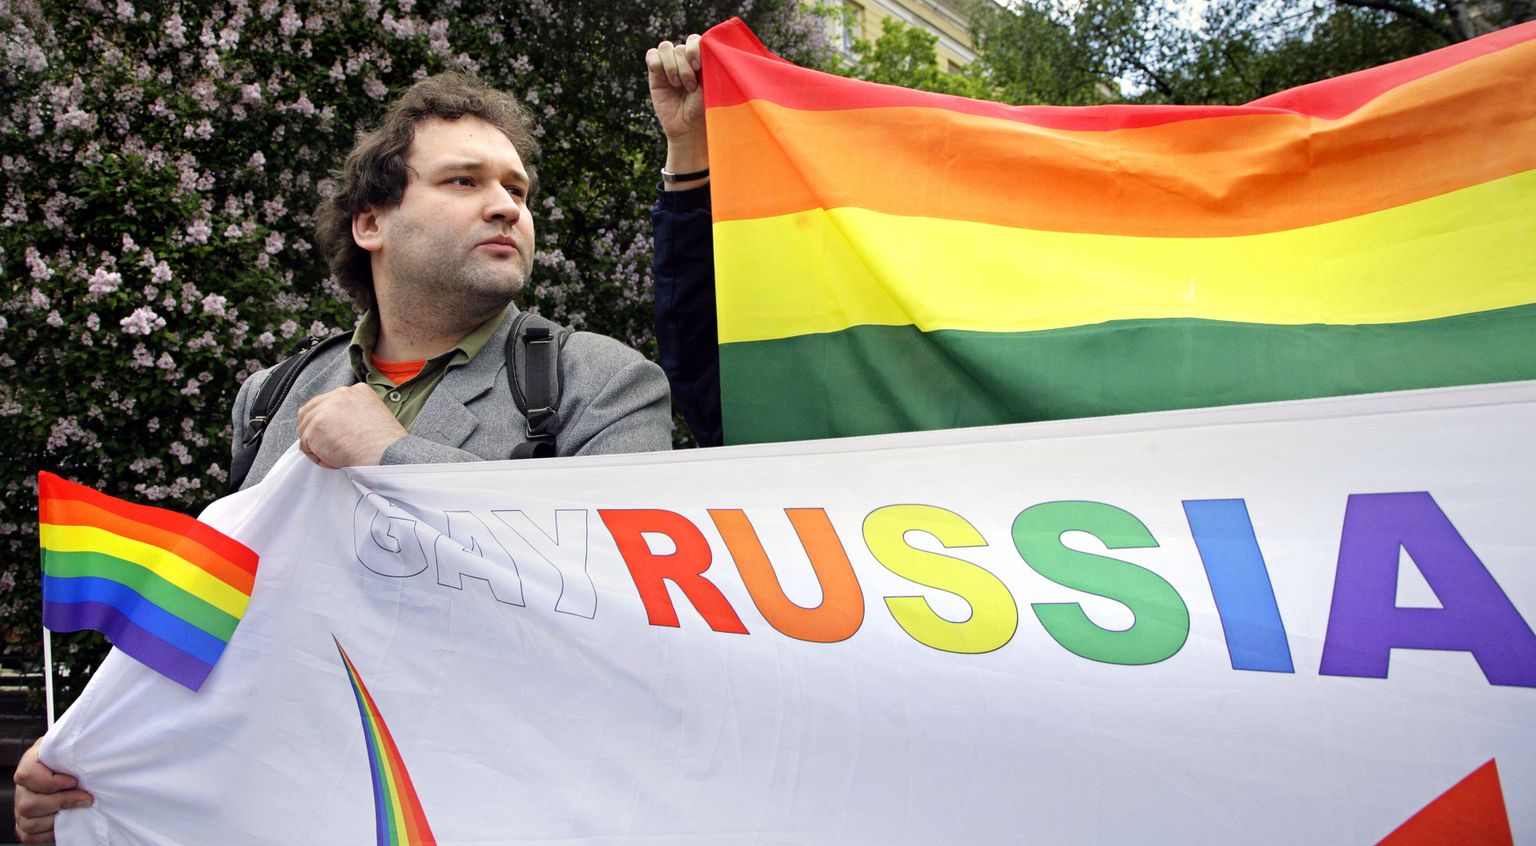 1. juunil, 2008 venemaal geiõiguste toetuseks korraldatud, kuid keelatud demonstratsioon. Pilt on illustratiivne.